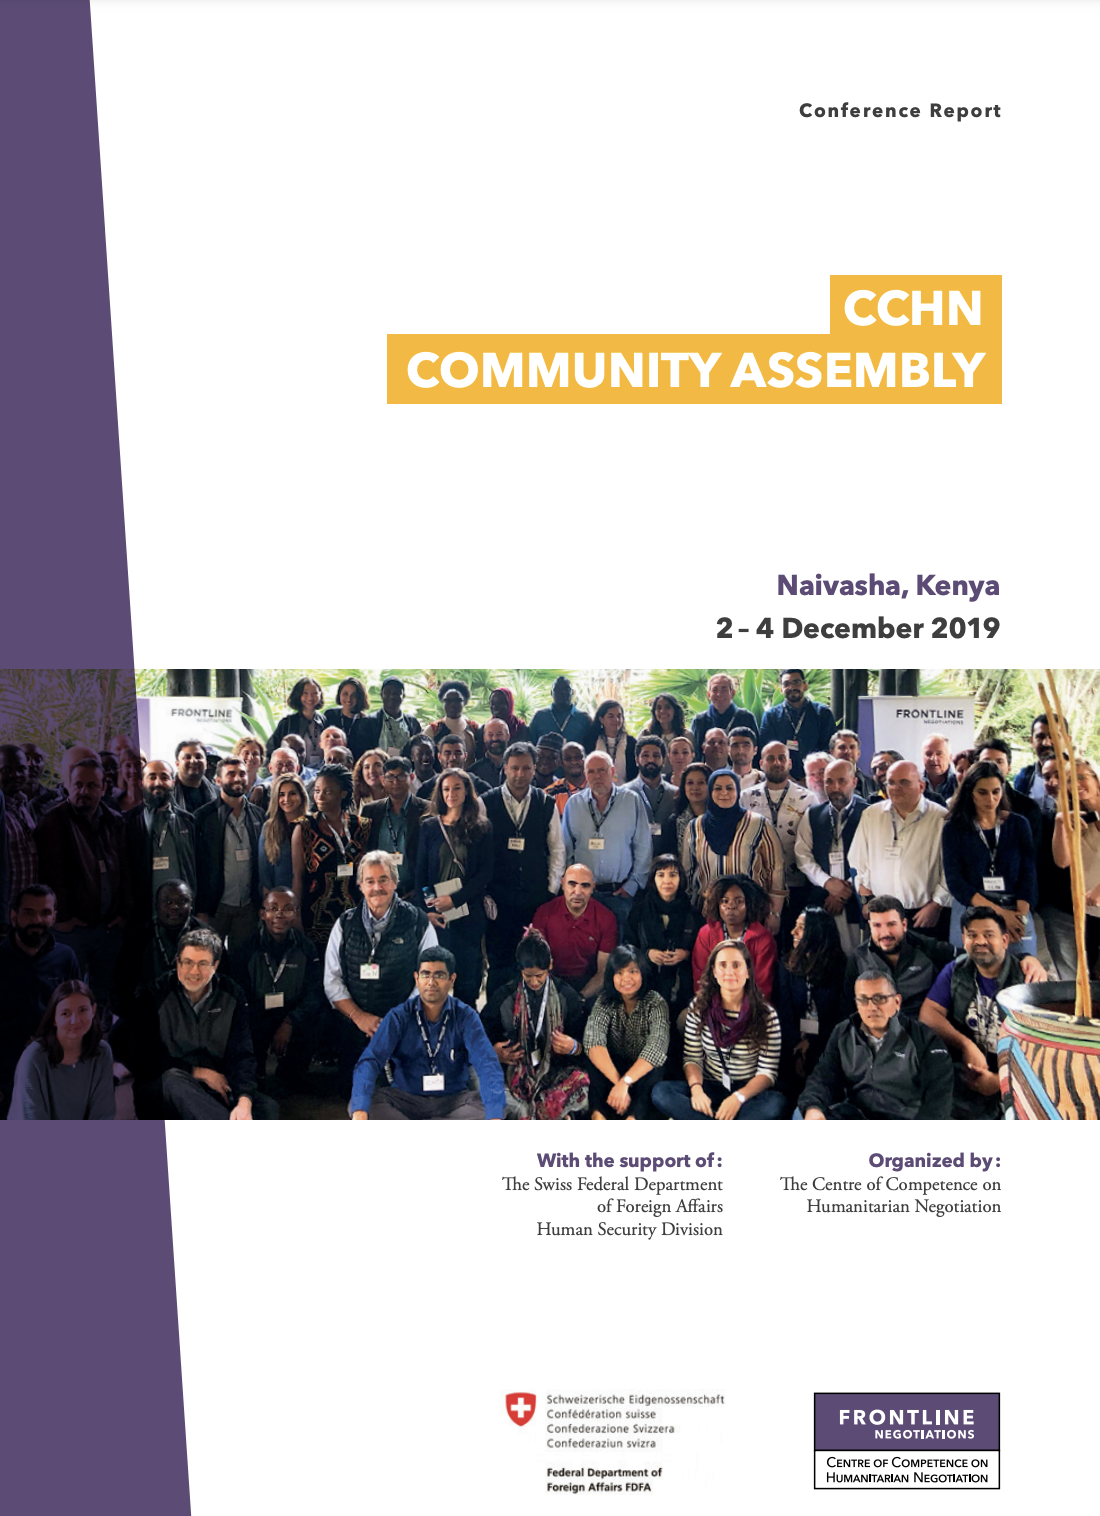 CCHN asamblea de la comunidad  2019 | Naivasha, Kenia